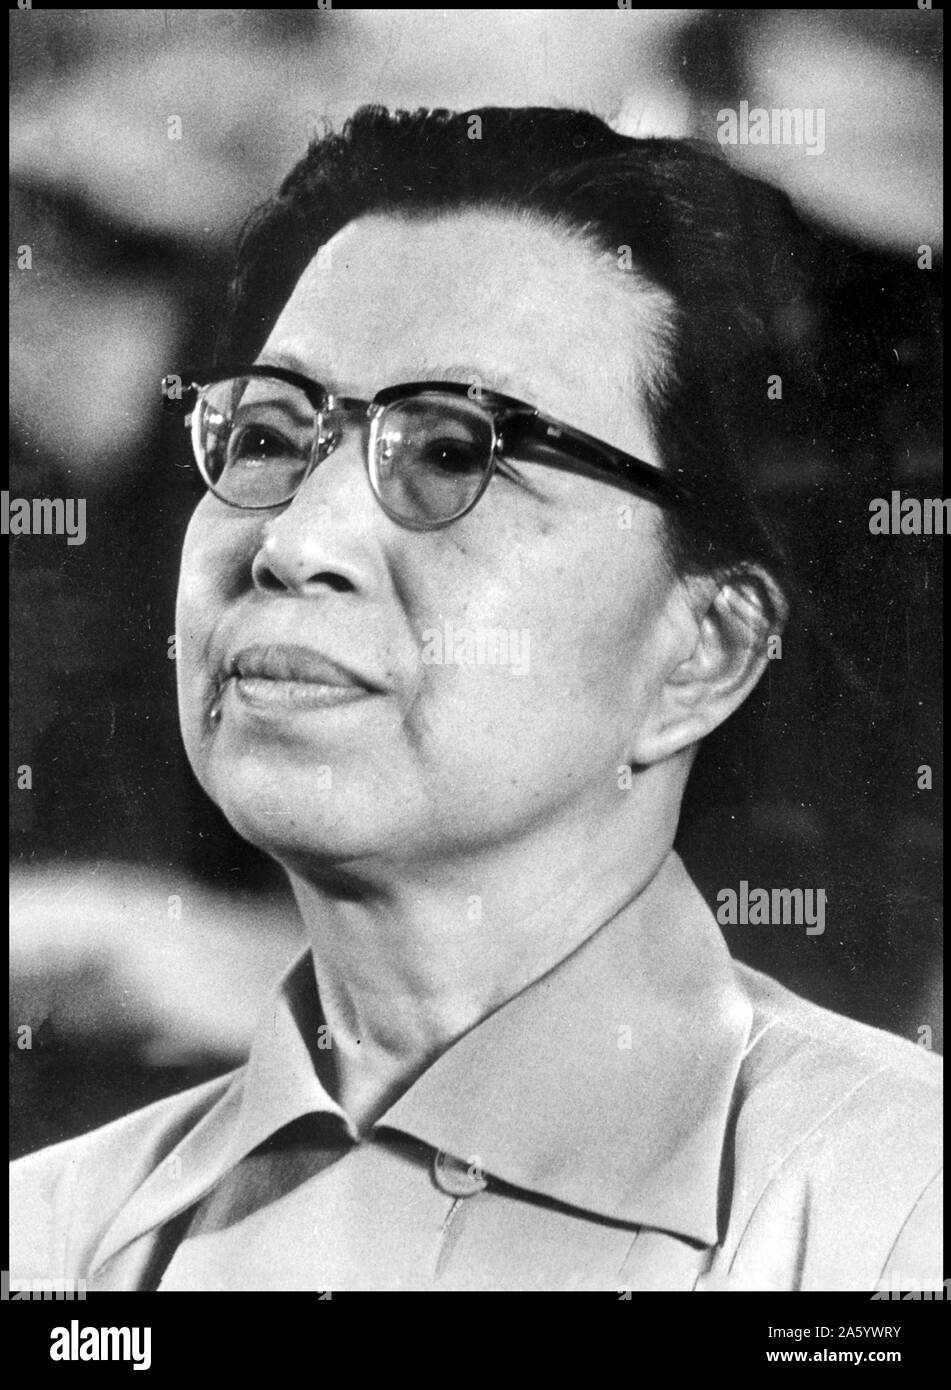 Foto von Jiang Qing (1914-1991), chinesische Schauspielerin und eine wichtige politische Figur während der Kulturrevolution. Sie war die vierte Frau von Mao Zedong, der Vorsitzende der kommunistischen Partei Chinas. Datierte 1976 Stockfoto